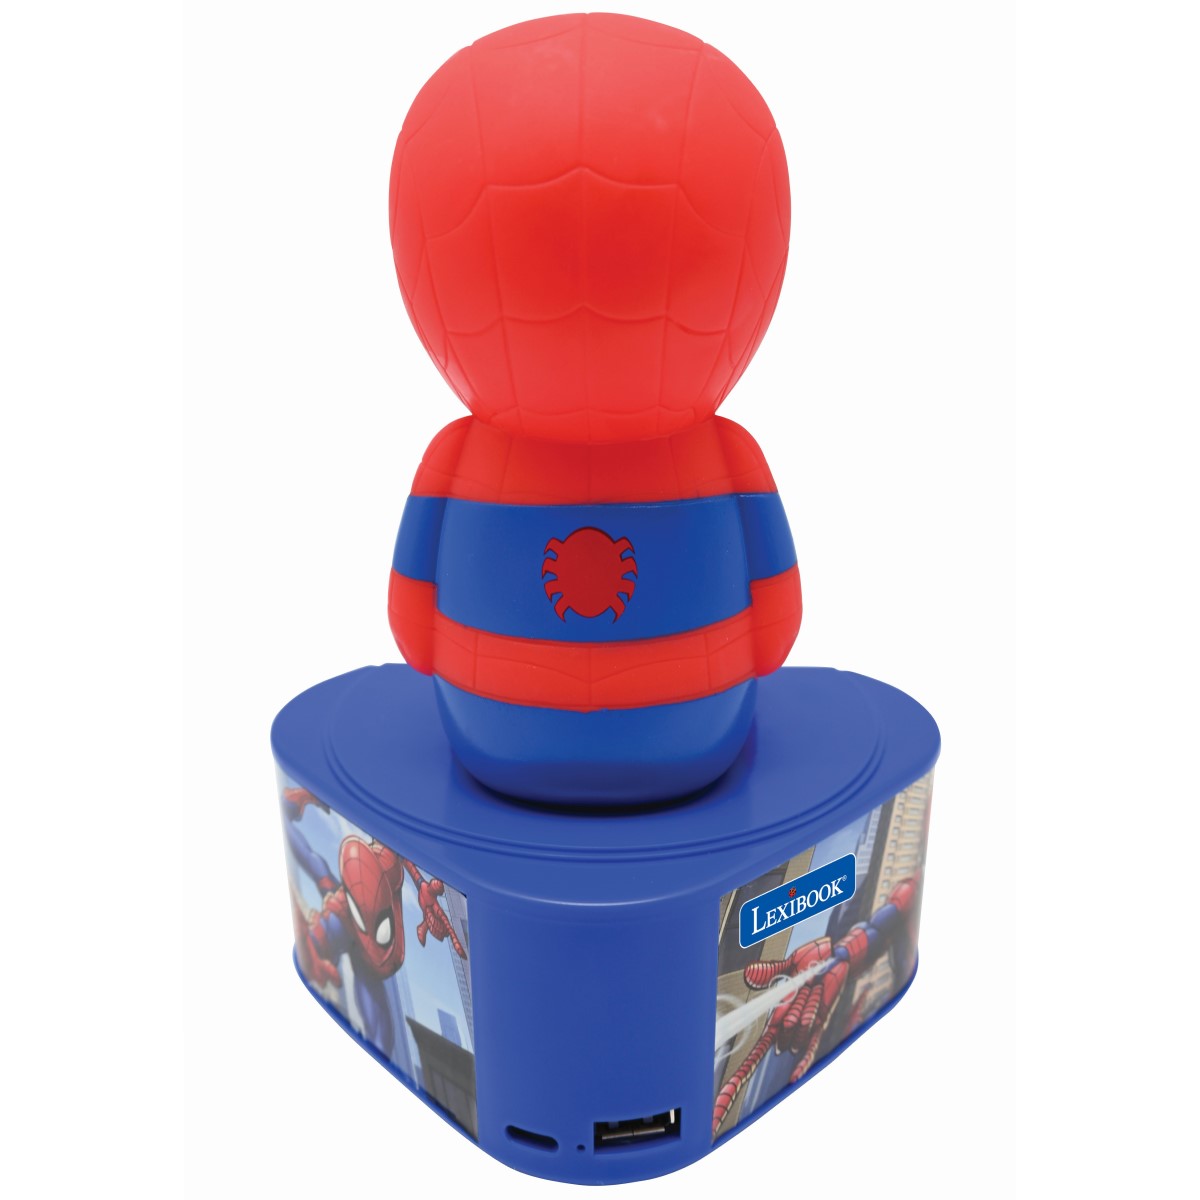 Spider-Man Bluetooth Lautsprecher mit beleuchteter Figur